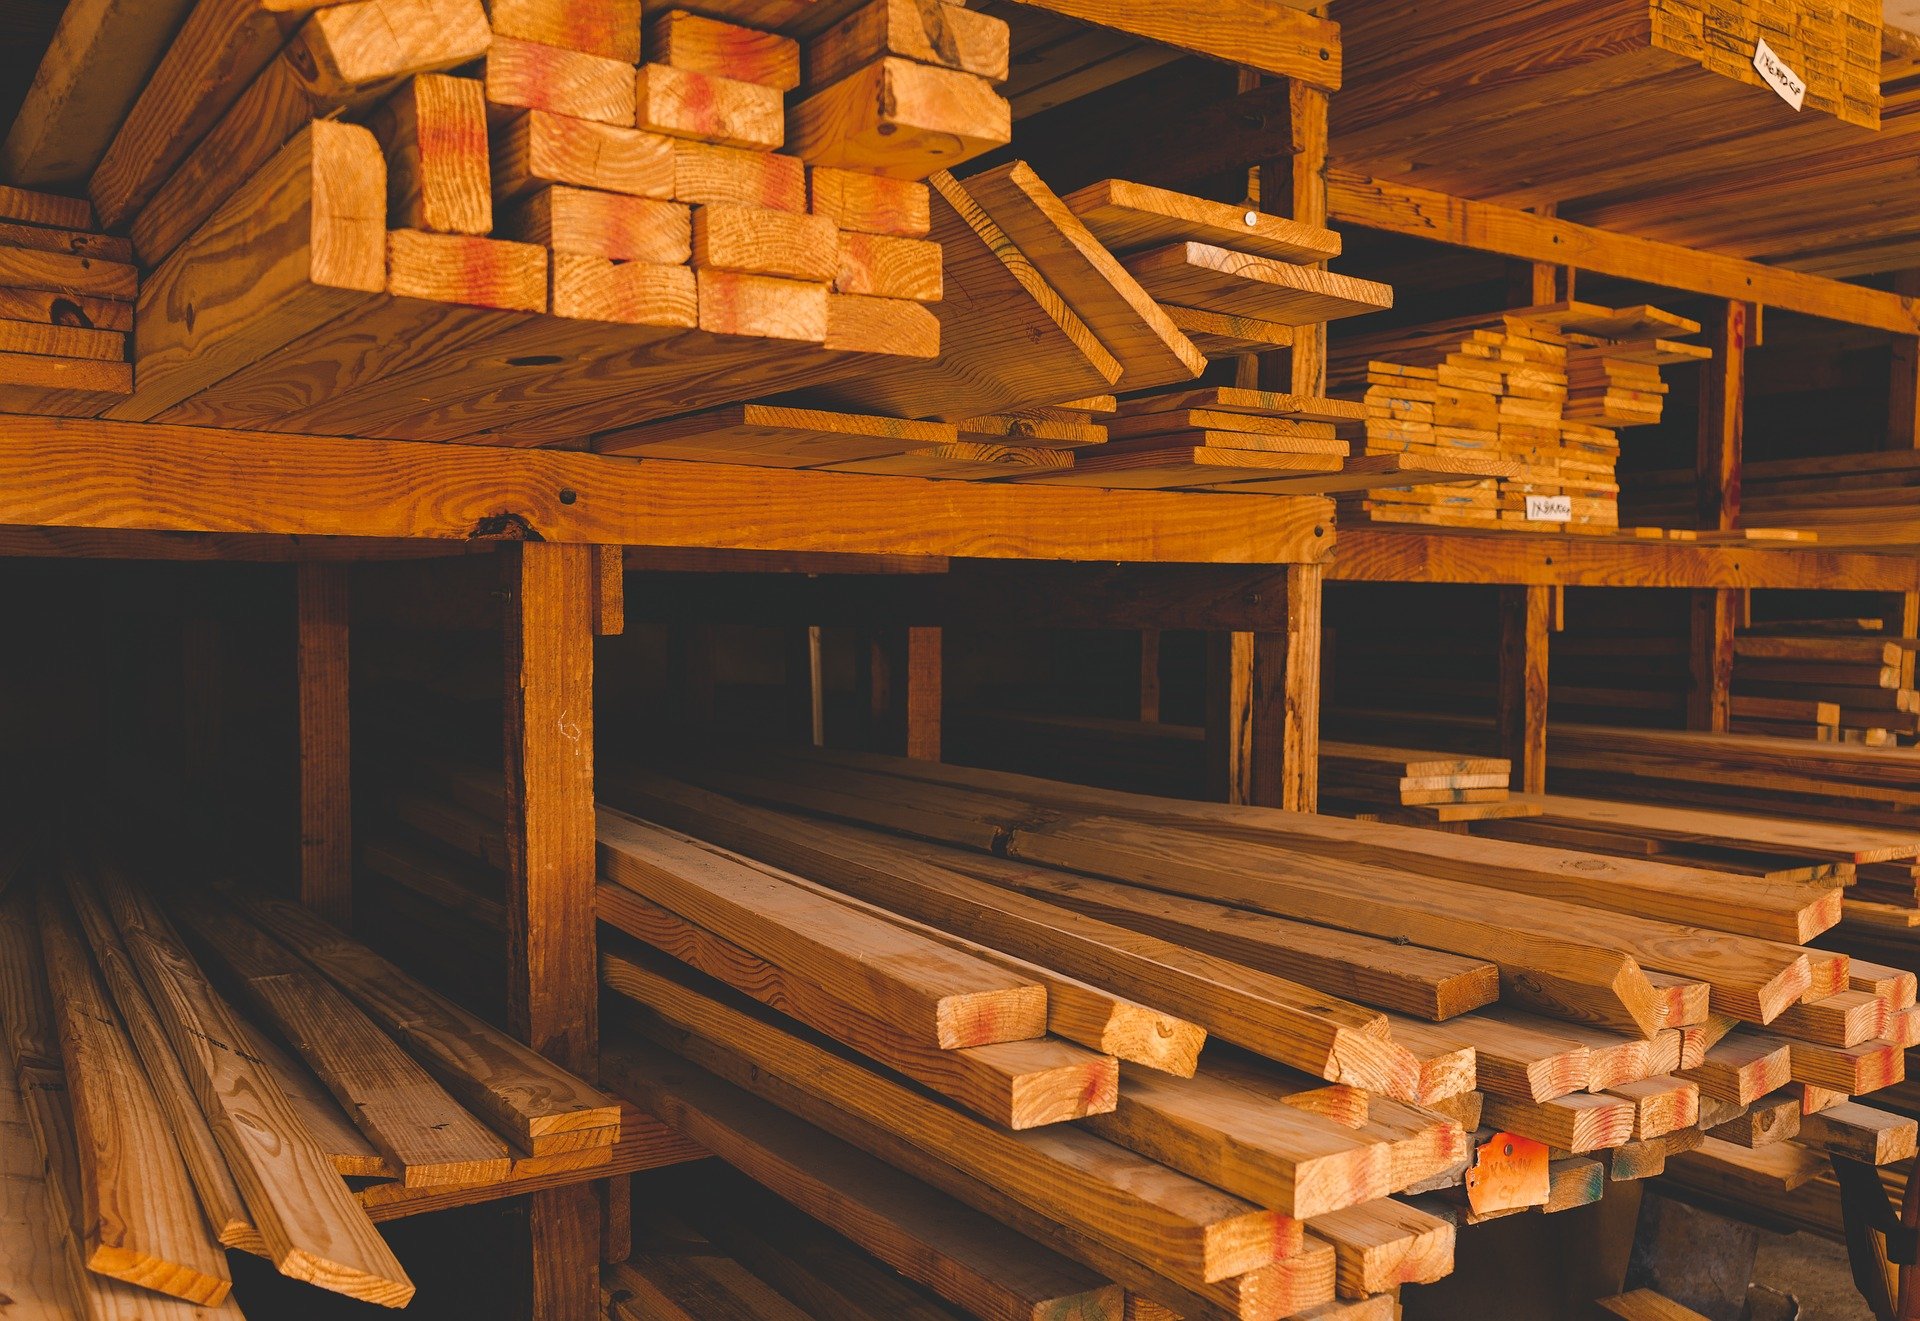 Минпромторг предлагает предоставлять скидку в 10%  на деревянные домокомплекты  - фото 1